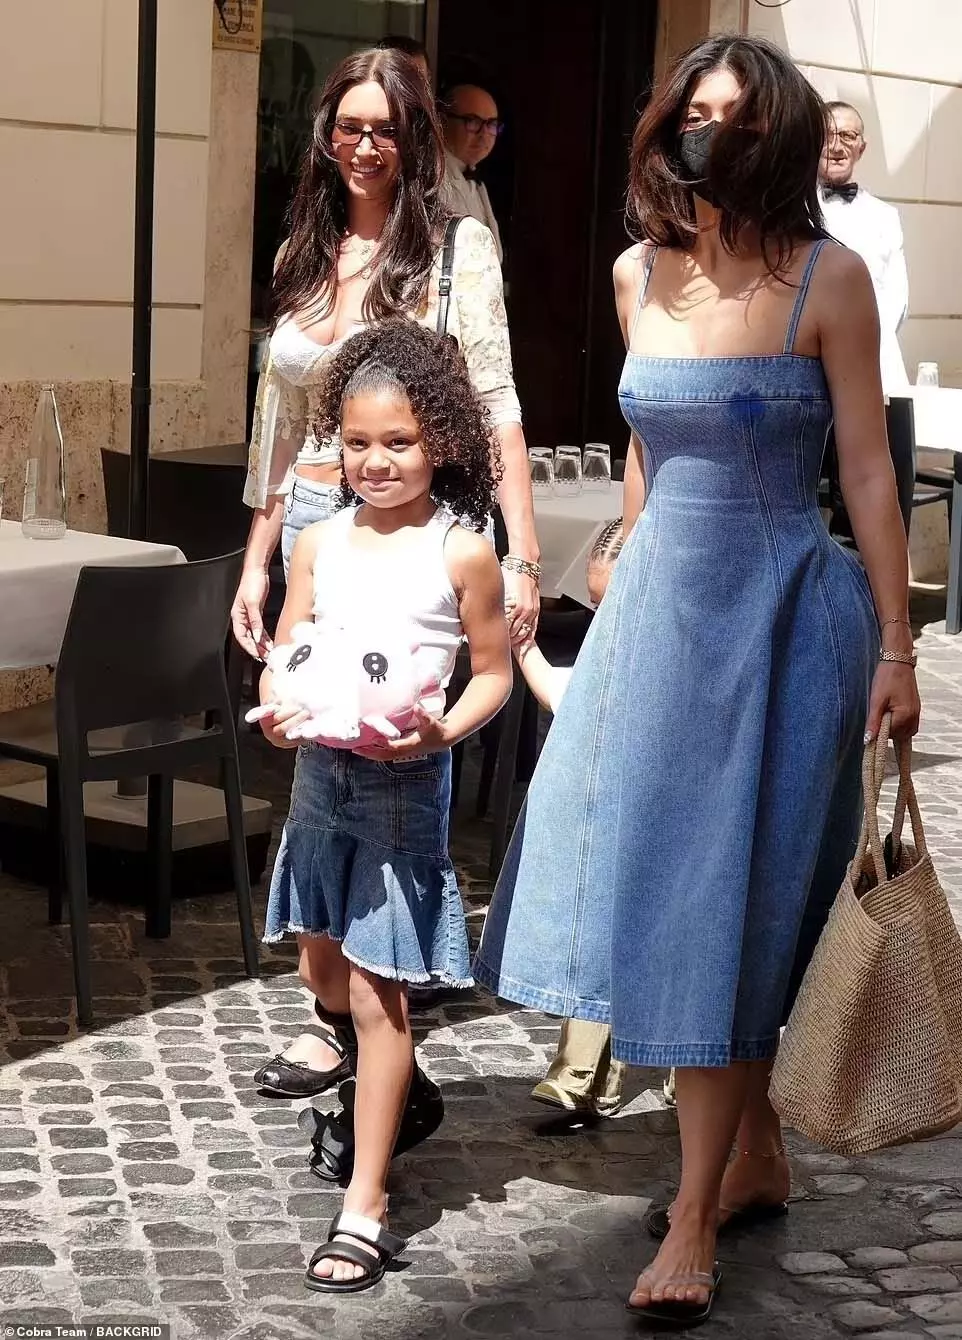 Kylie Jenner बच्चों के साथ रोम में मना रही छुट्टियां